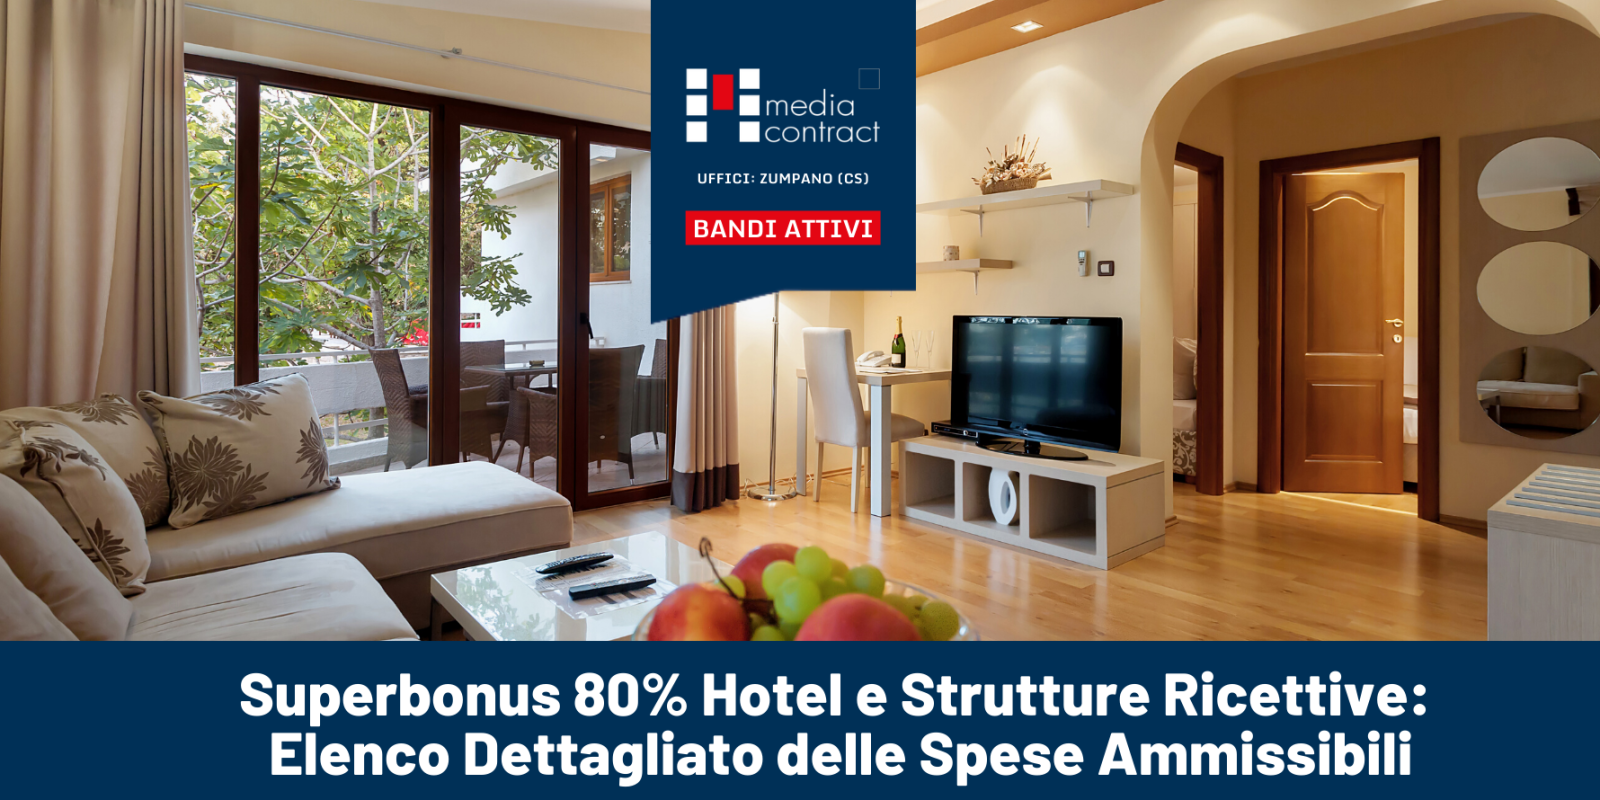 Superbonus 80% Hotel e Strutture Ricettive: Elenco Dettagliato delle Spese Ammissibili